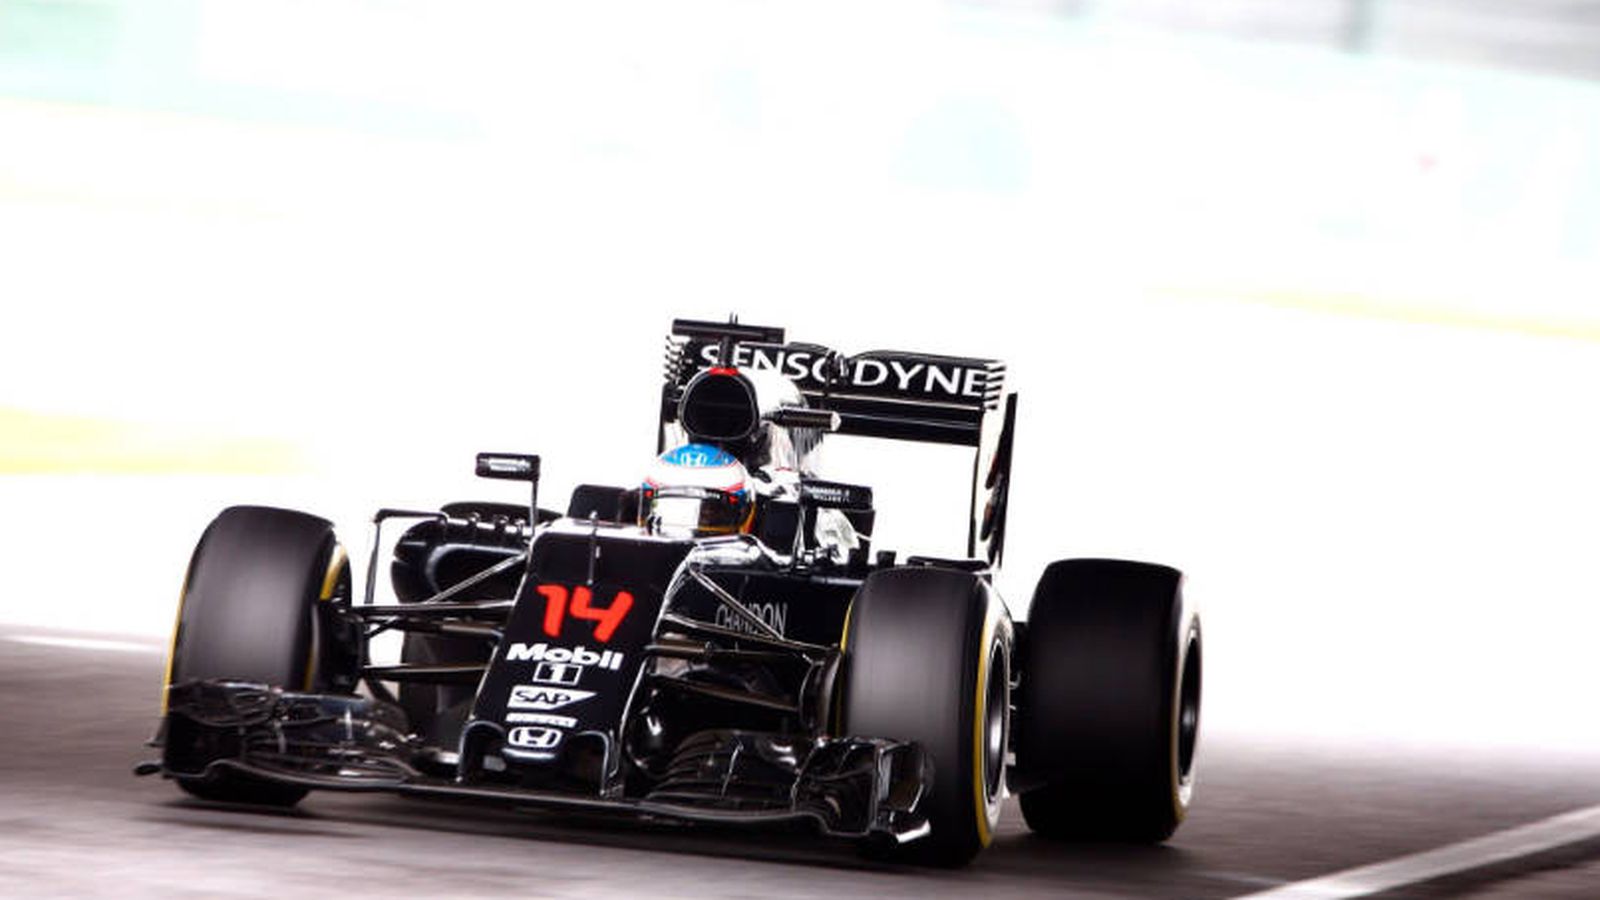 Foto: Alonso, Button, McLaren y Honda atravesaron un 'túnel' en Suzuka.